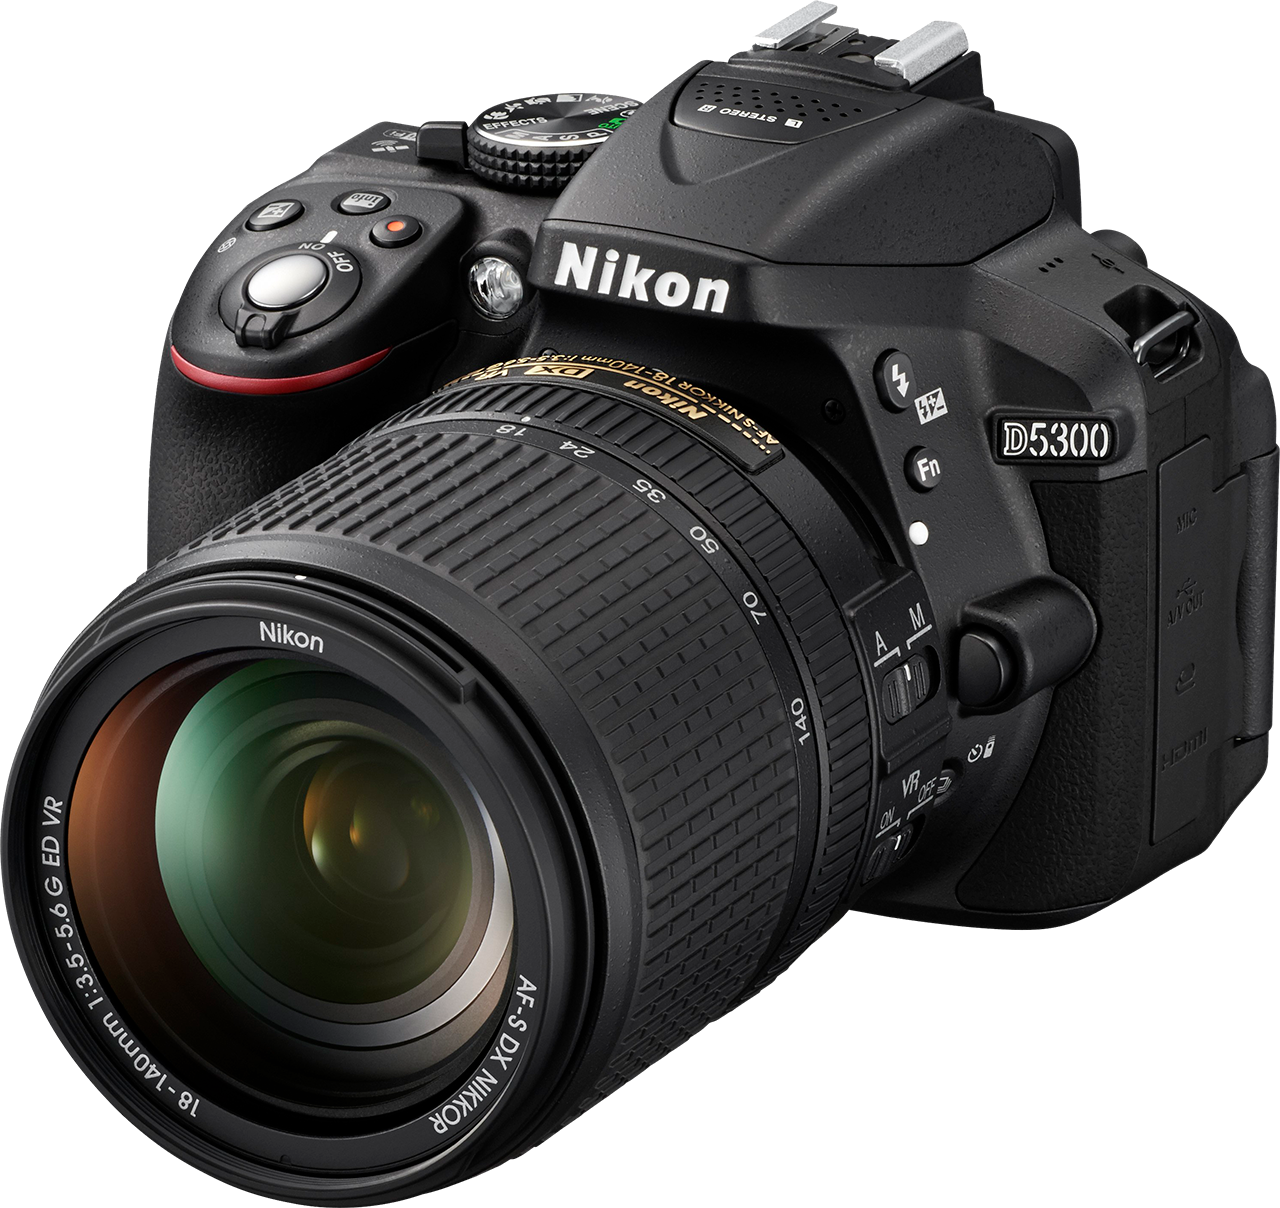 Nikon D5300 został wykonany w technologii Monocoque - korpus aparatu ma jednolitą konstrukcję